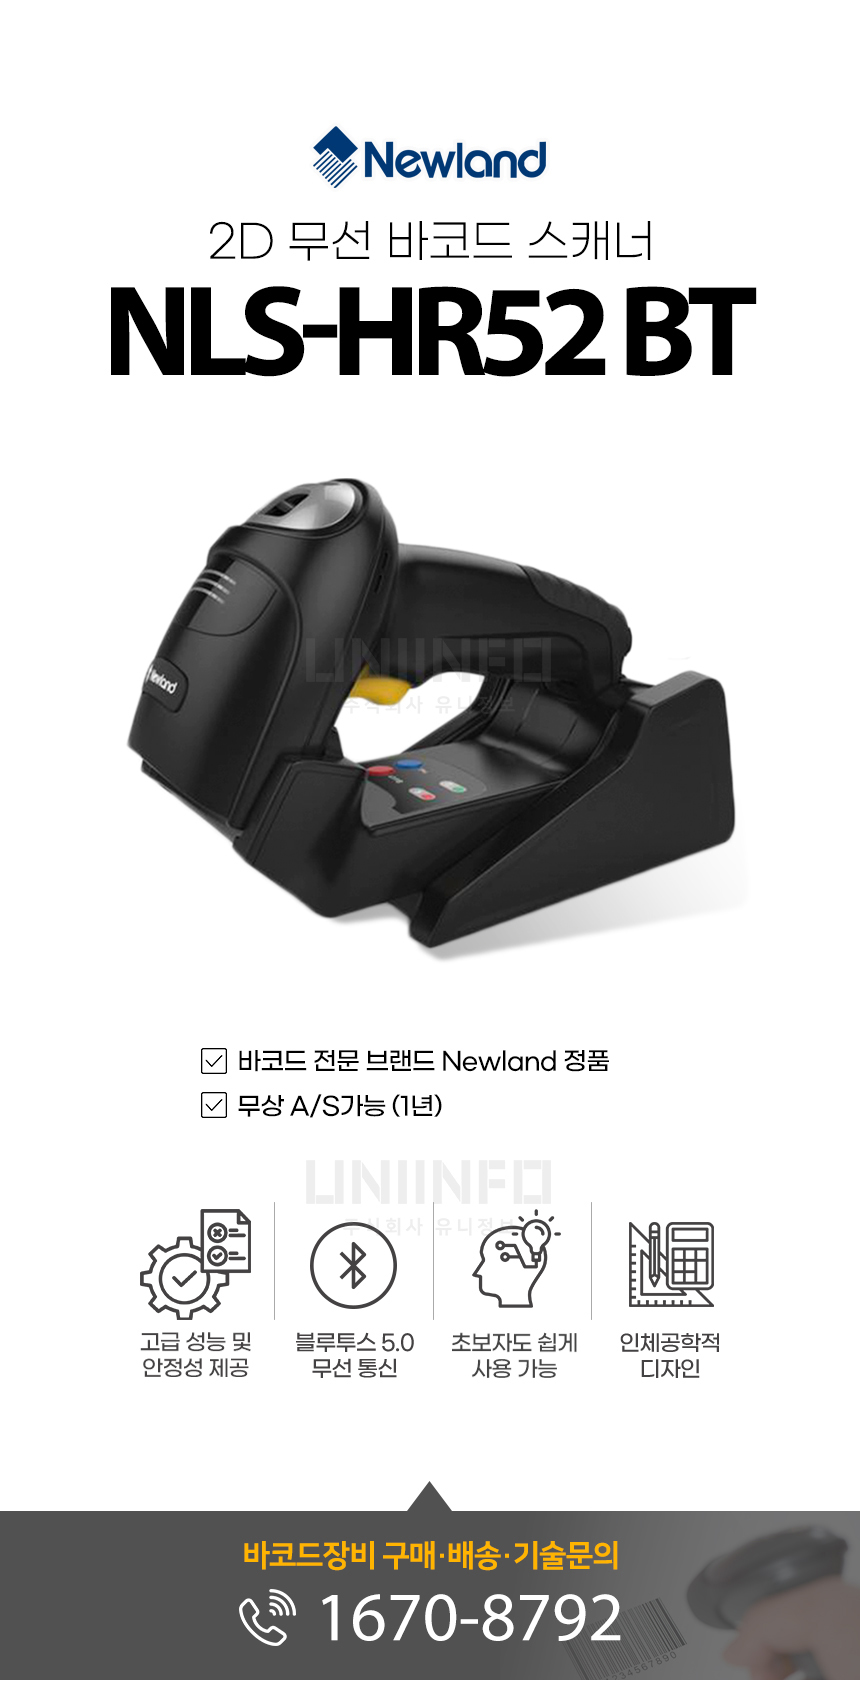 뉴랜드 2d 무선 바코드 스캐너 nls-hr52 bt 고성능 안정성 블루투스 5.0 인체공학적 디자인